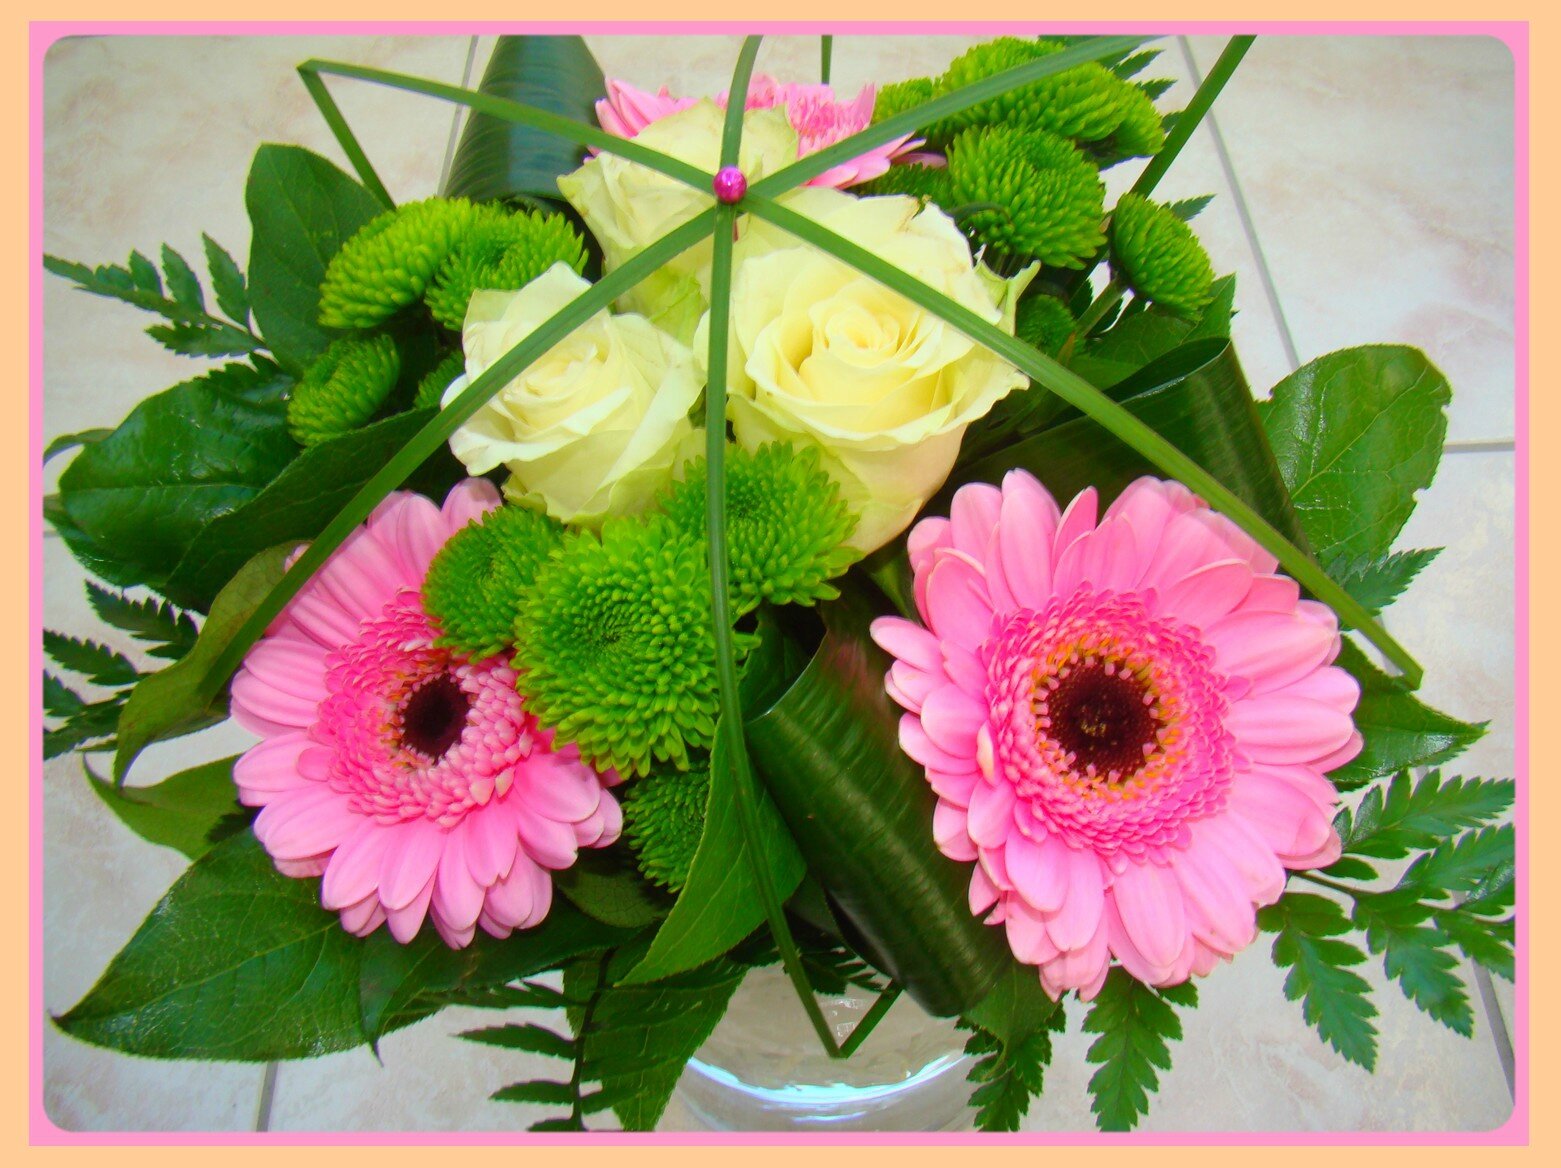 Cœur en joie : un bouquet de fleurs qui illumine l'âme - blog fleuristes-et- fleurs.com